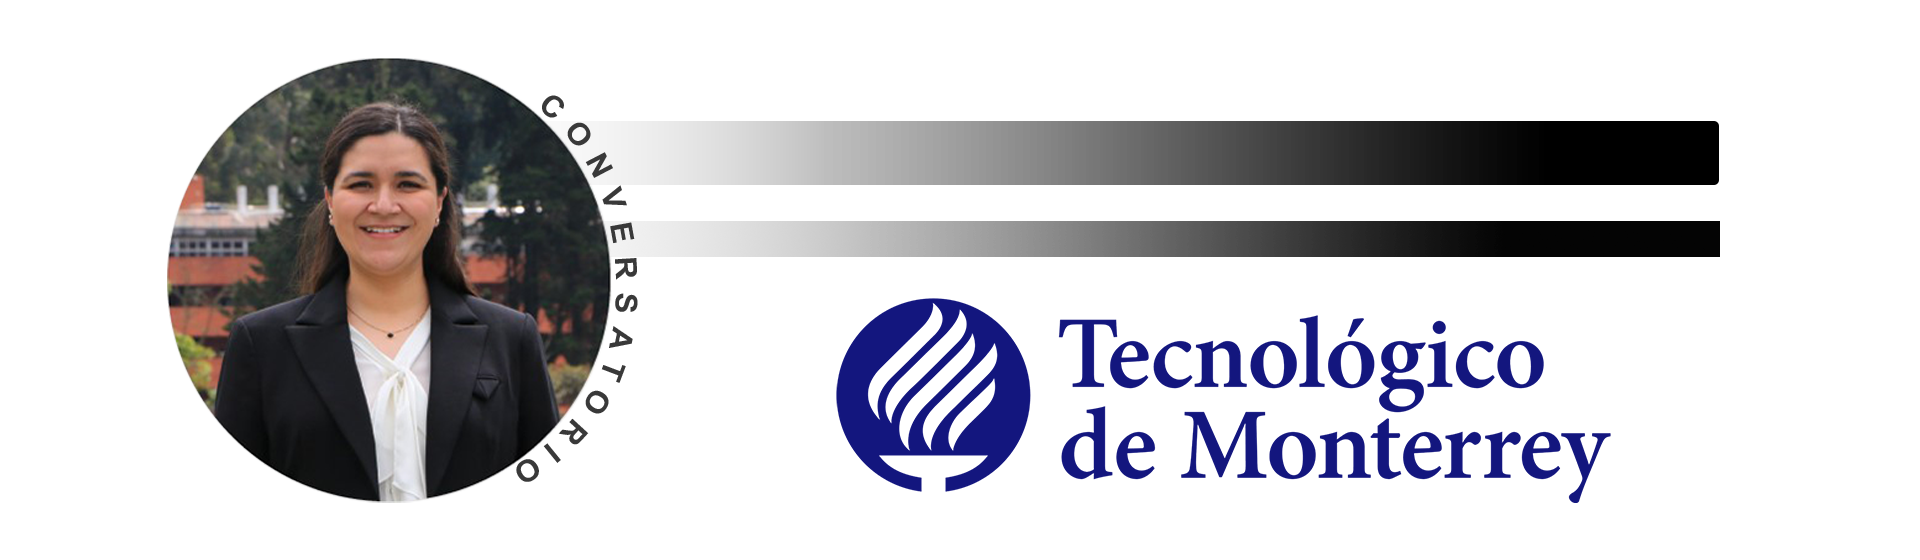 Descubre el convenio con el Tec de Monterrey para físicos